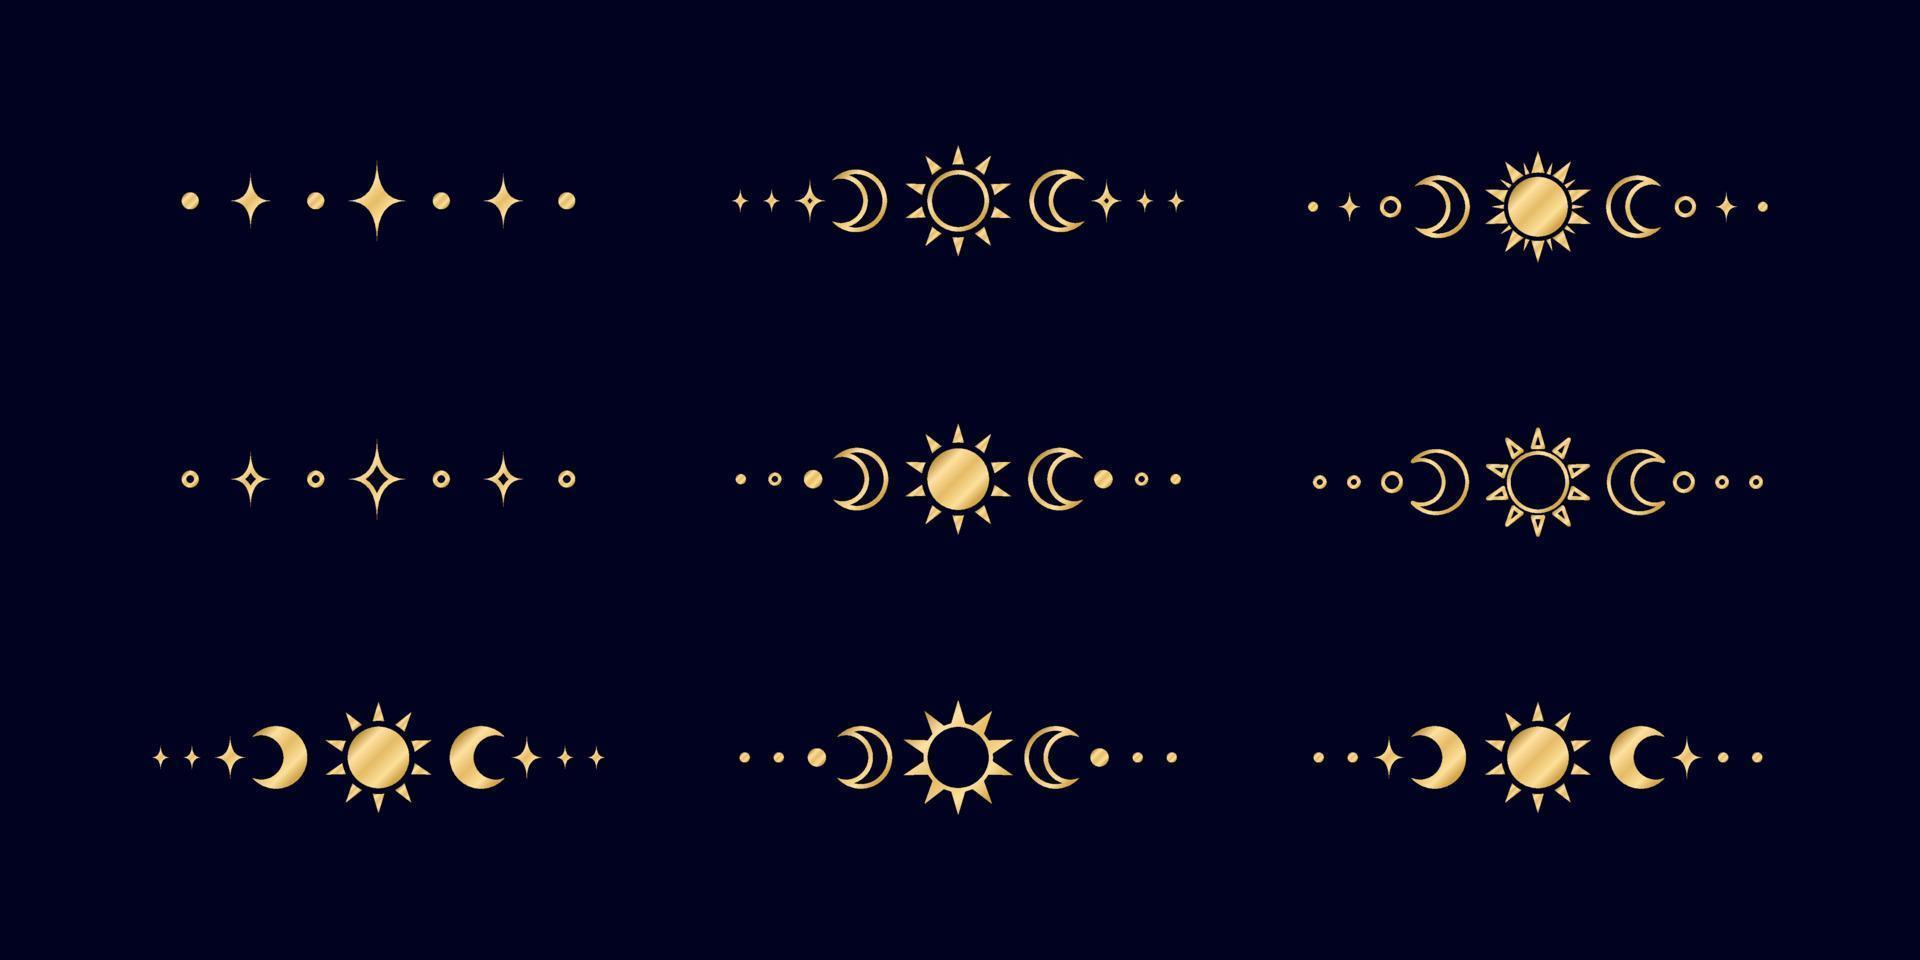 oro celestial texto divisor con sol, estrellas, Luna etapas, medias lunas florido boho místico separador decorativo elemento vector